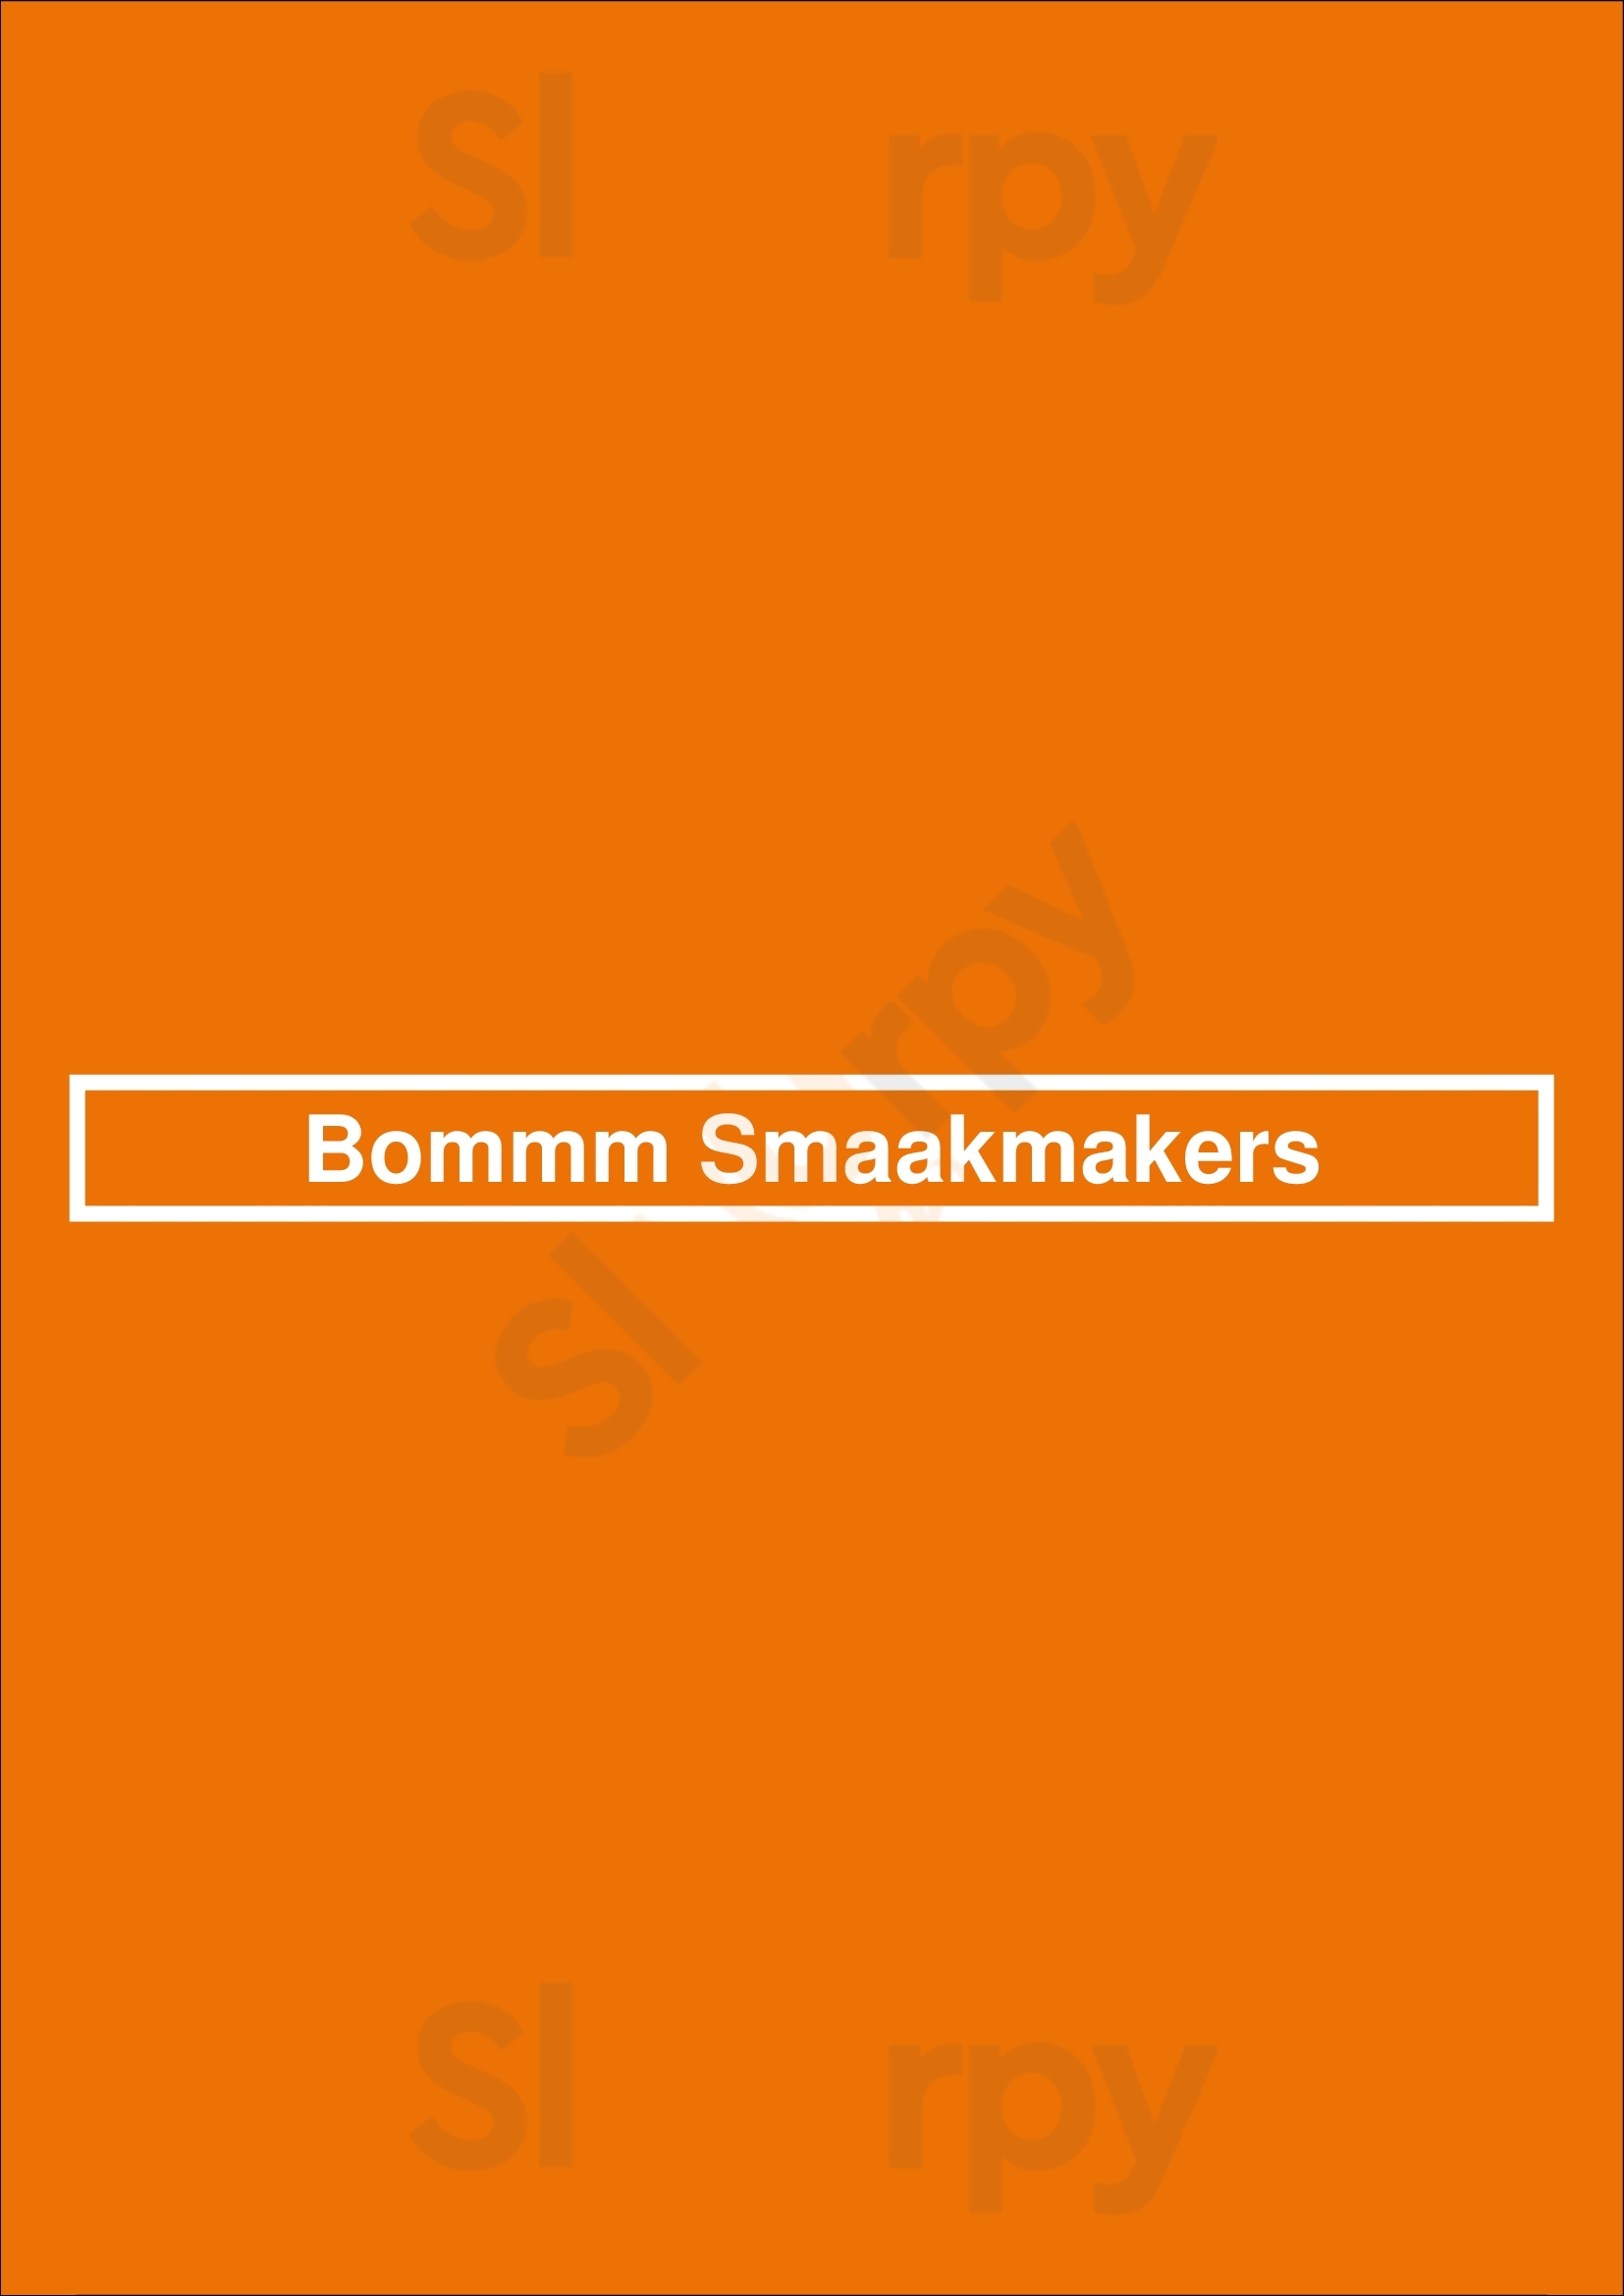 Bommm Smaakmakers Veenendaal Menu - 1